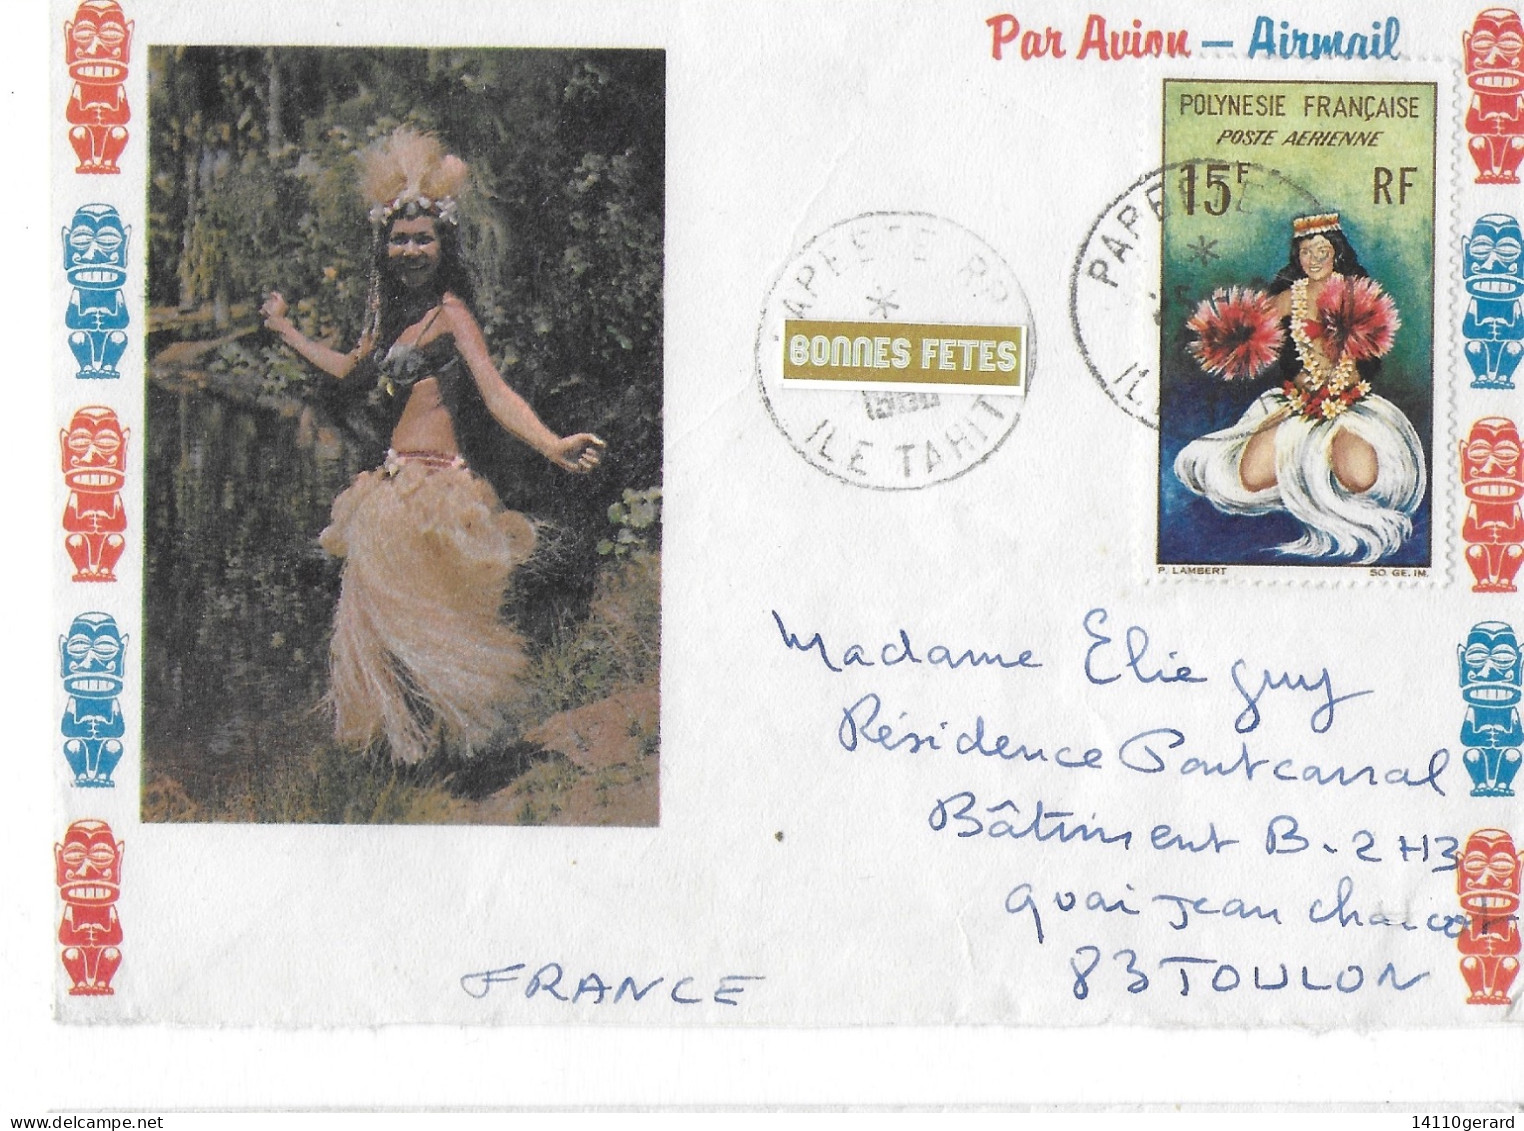 PAPETTE ILE TAHITI 25/10/1968 - Used Stamps